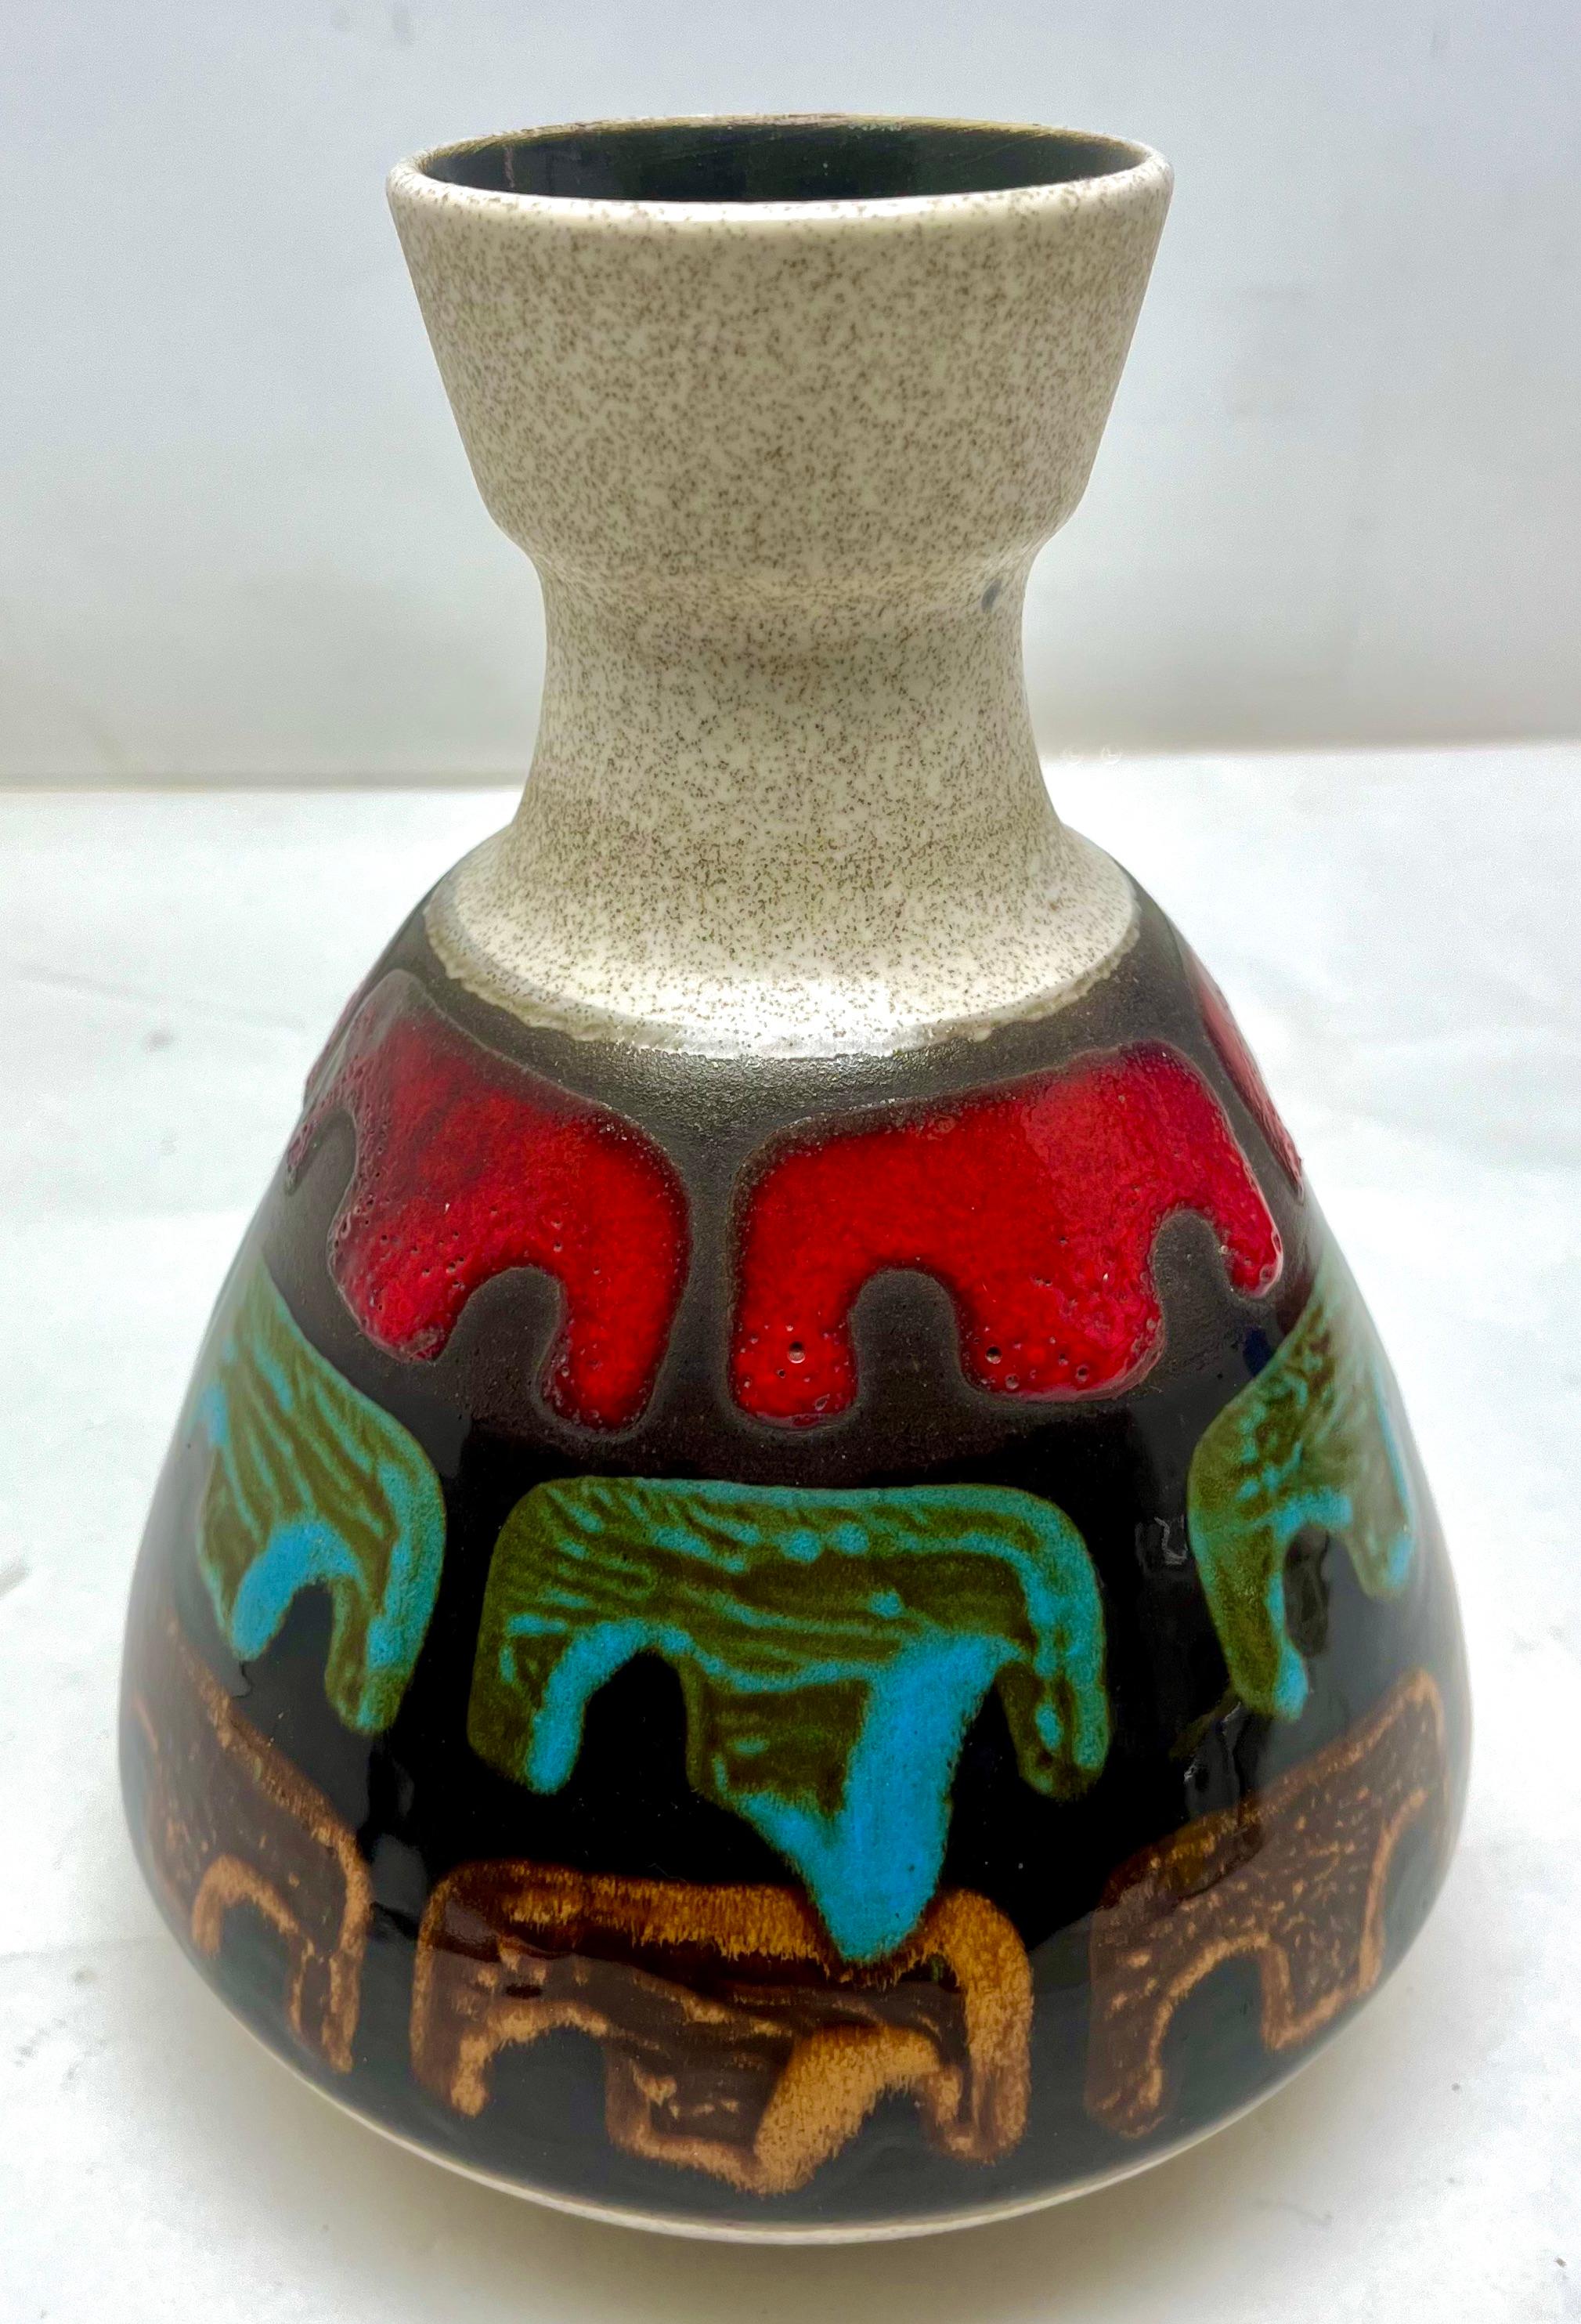 Das Stück ist in ausgezeichnetem Zustand und eine echte Schönheit!
Ein wahrer Schatz für den Keramiksammler. 

Die Herstellung dieser Vasen erforderte viel handwerkliches Geschick und Zeit.











 